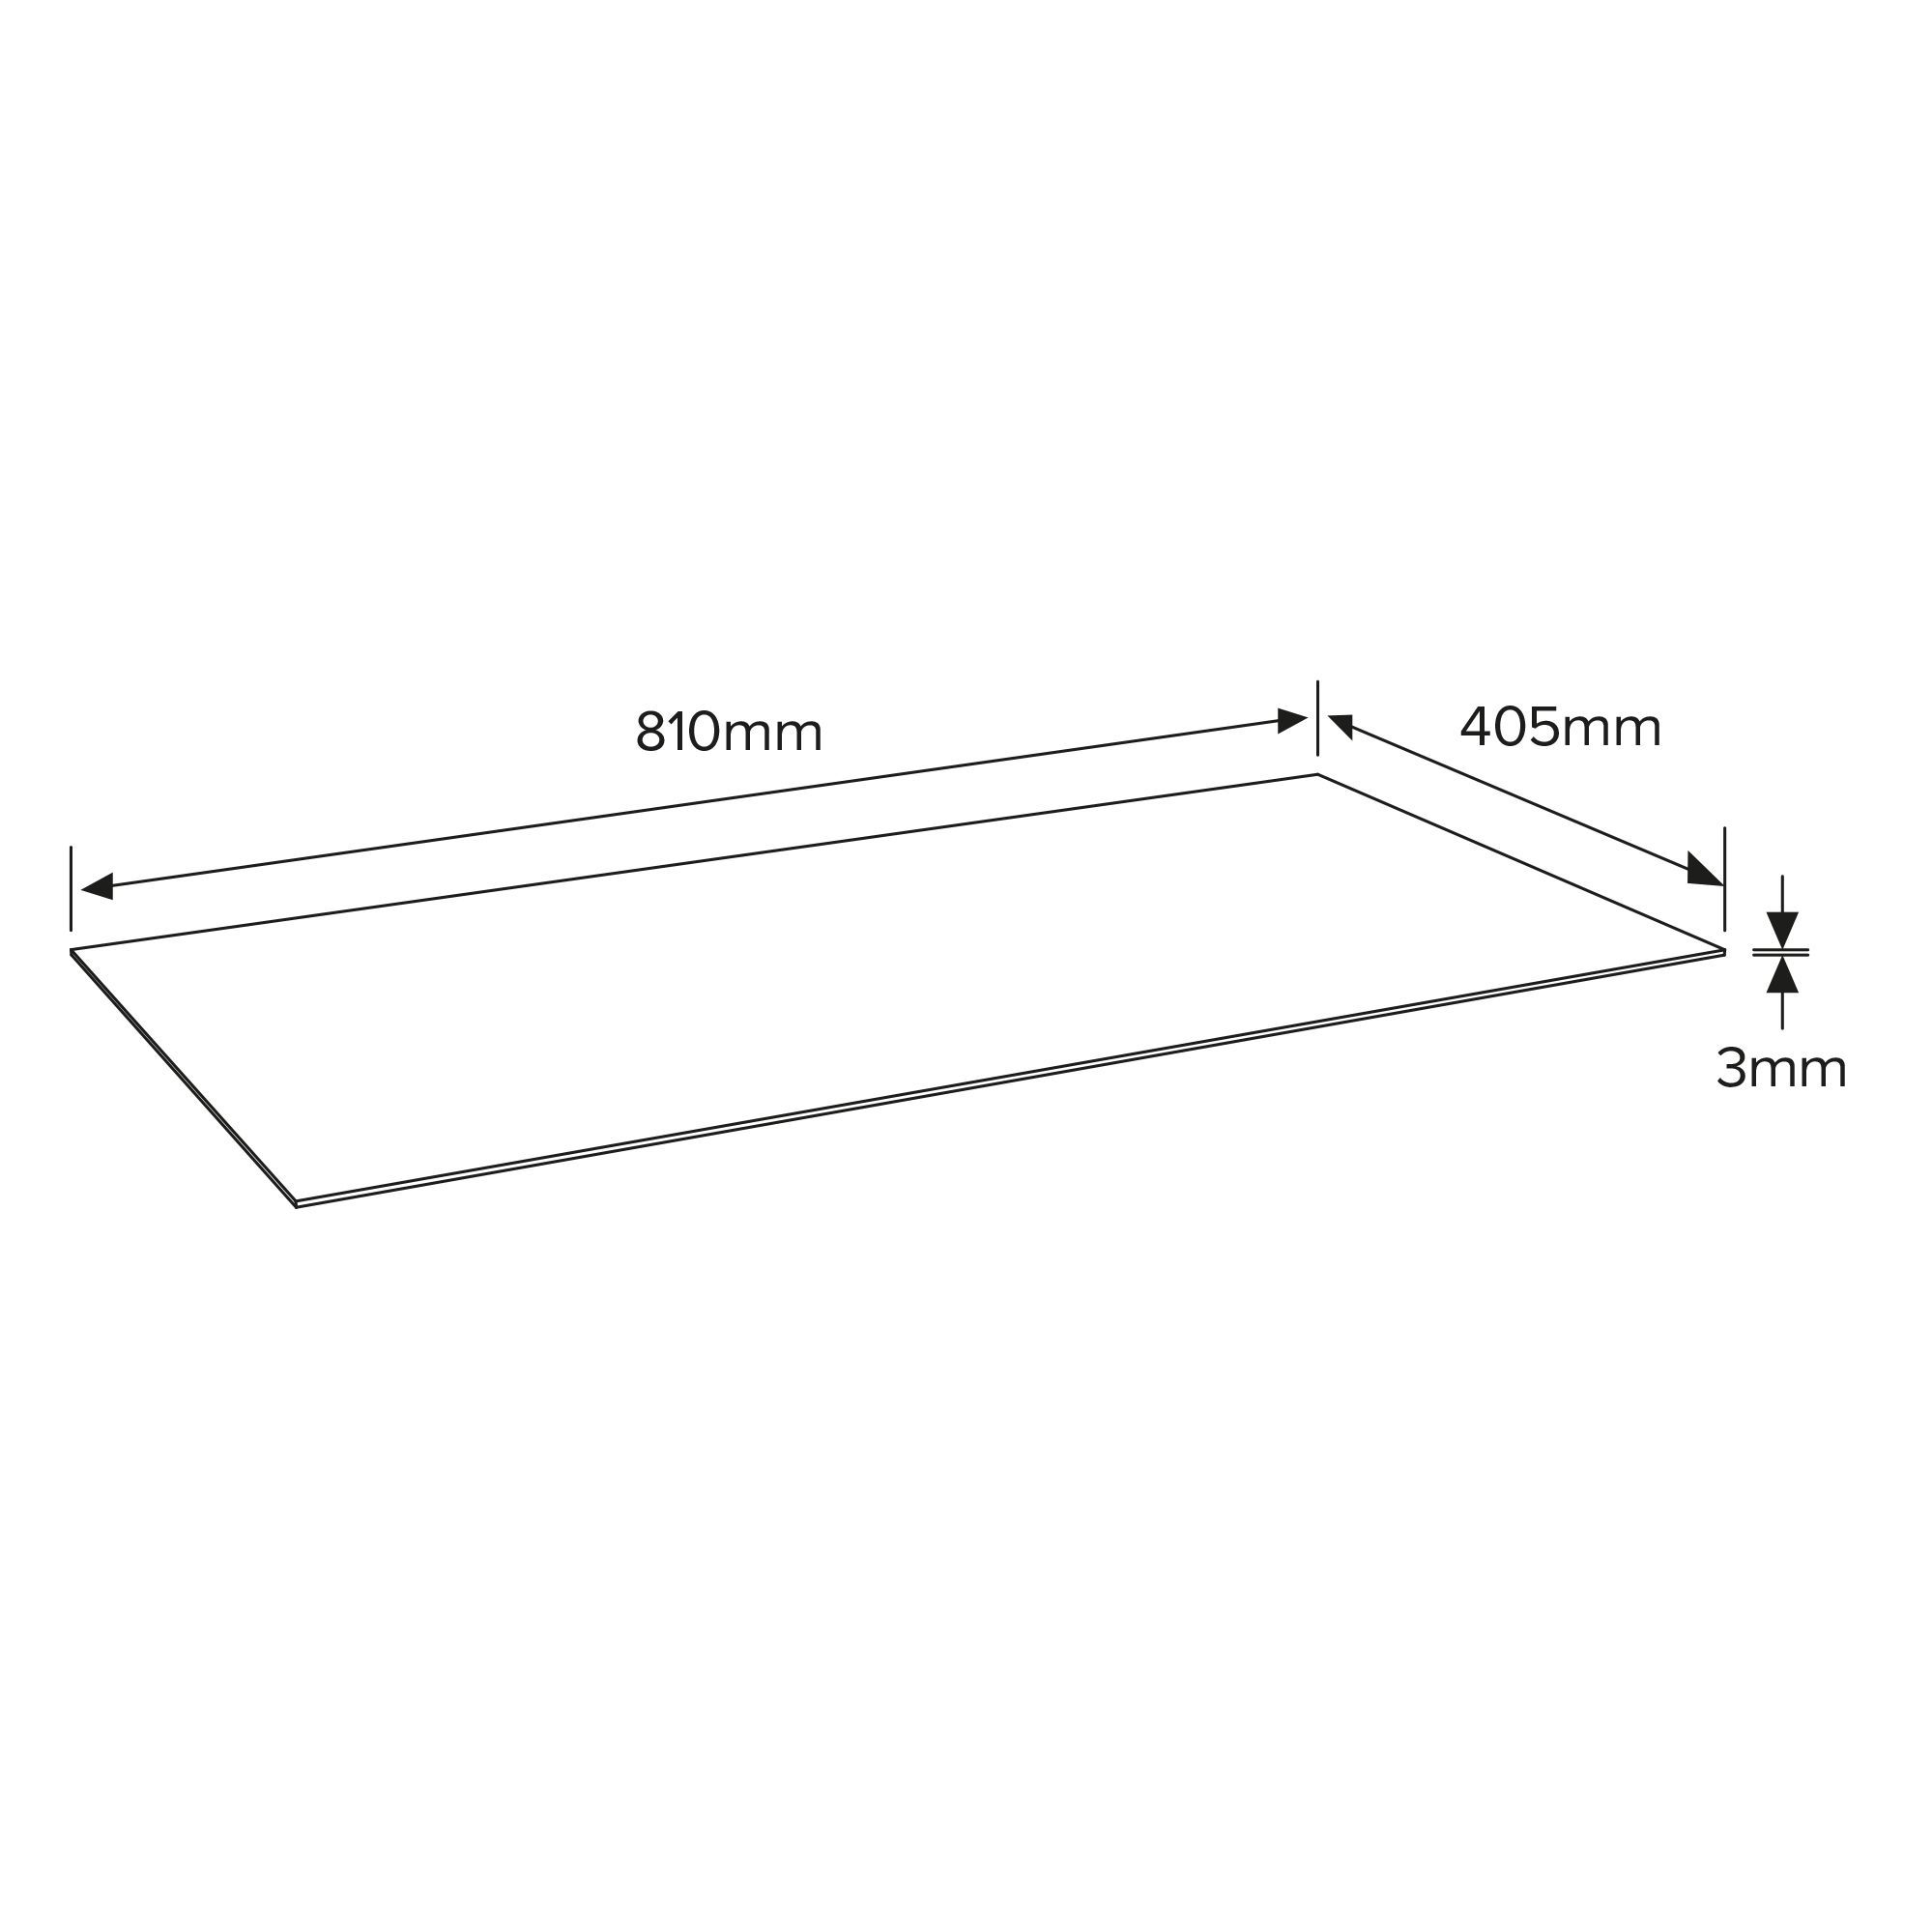 White Hardboard (L)0.41m (W)0.81m (T)3mm 930g